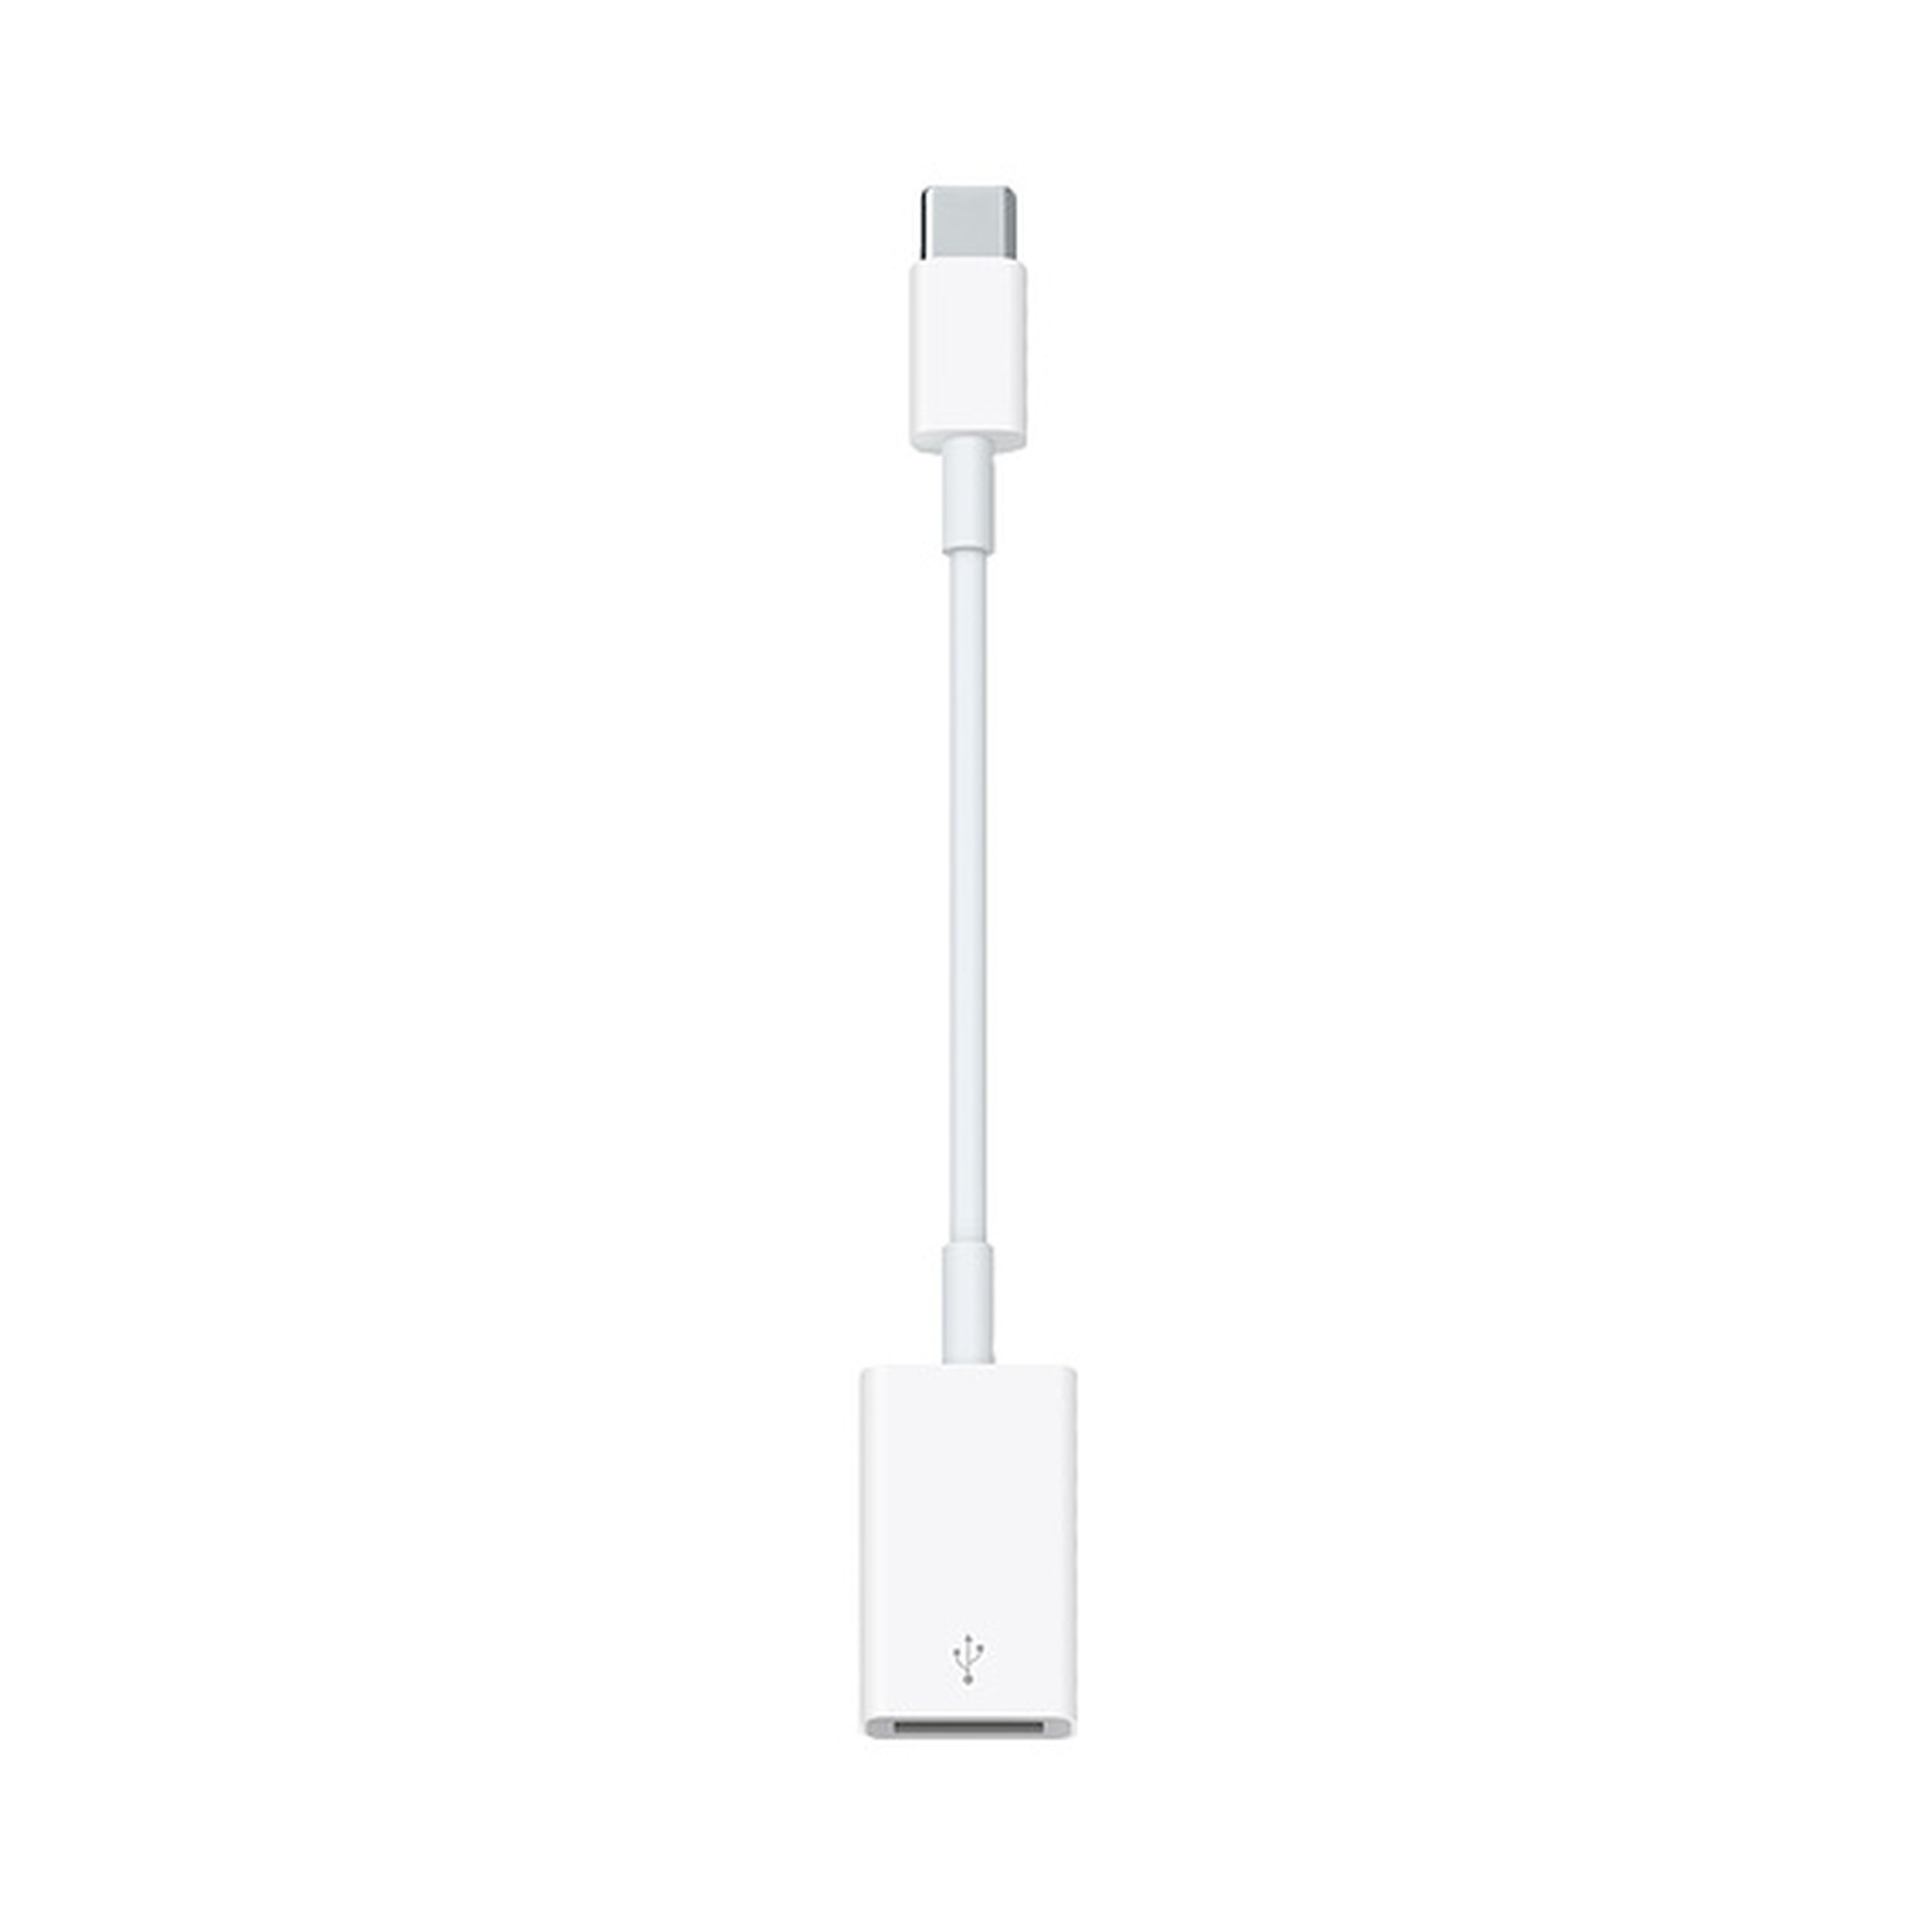 El adaptador de USB a USB-C de Apple